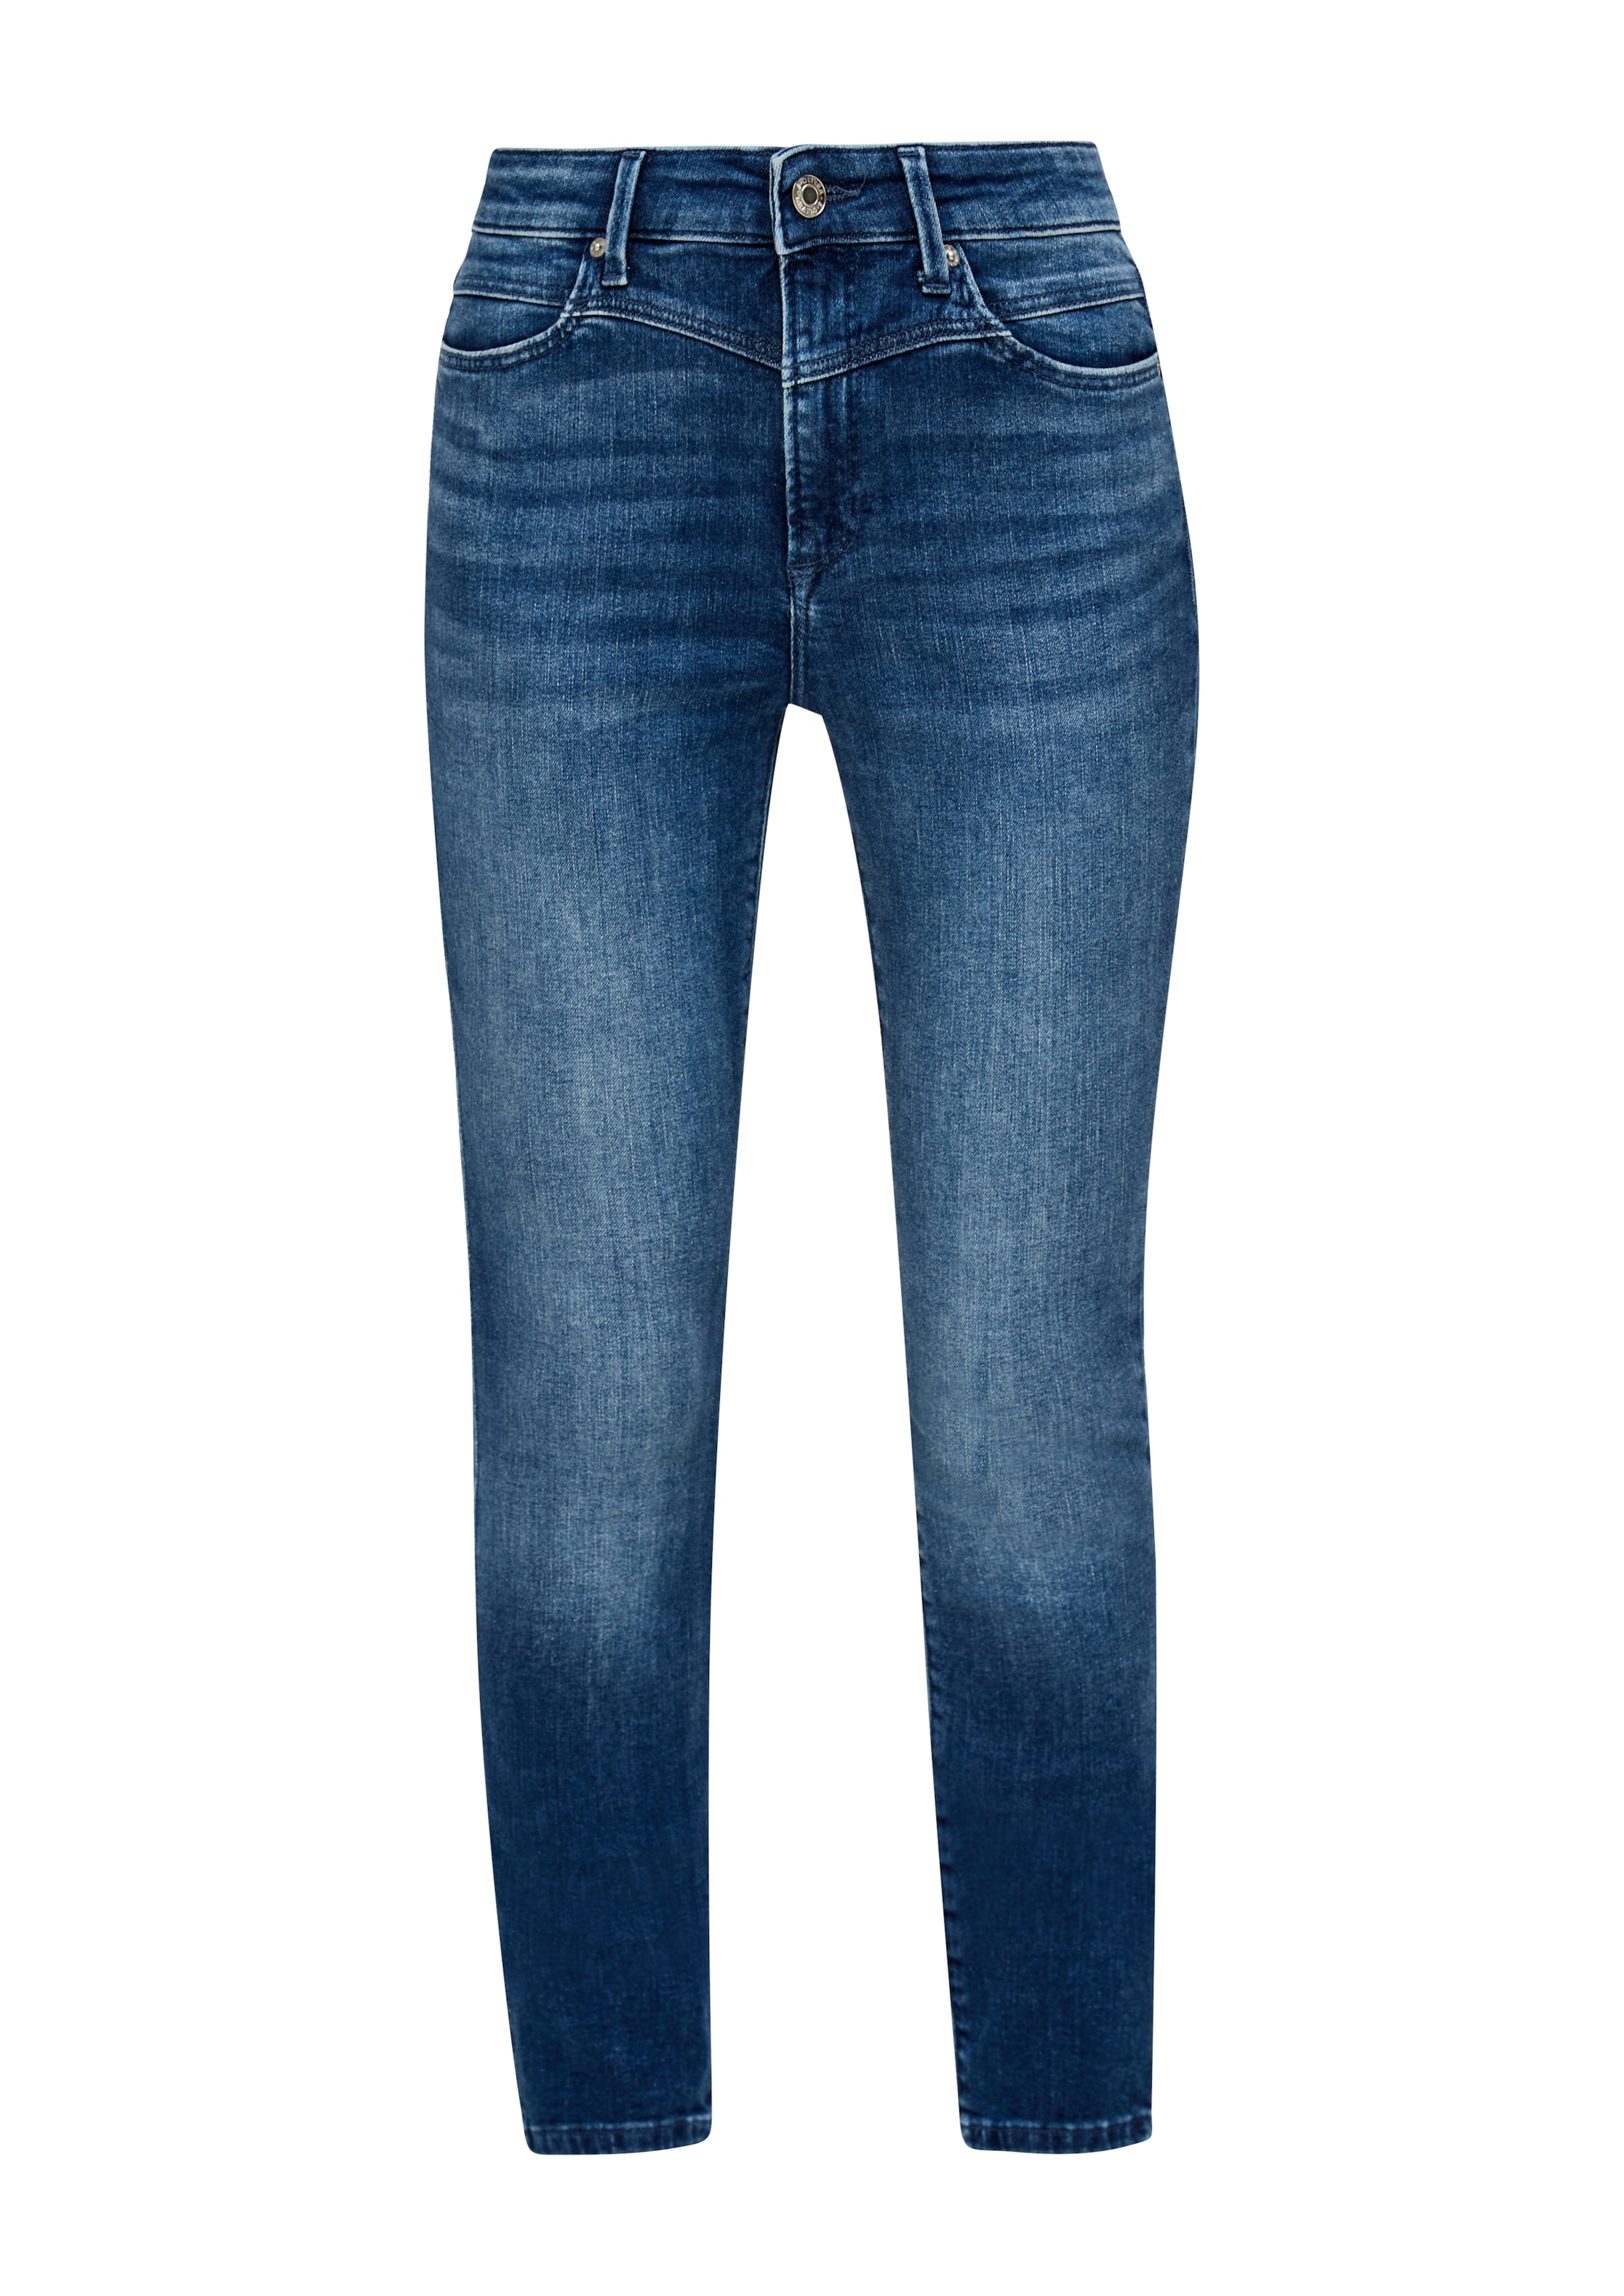 bei coolen, in Waschungen Skinny-fit-Jeans, OTTOversand unterschiedlichen s.Oliver